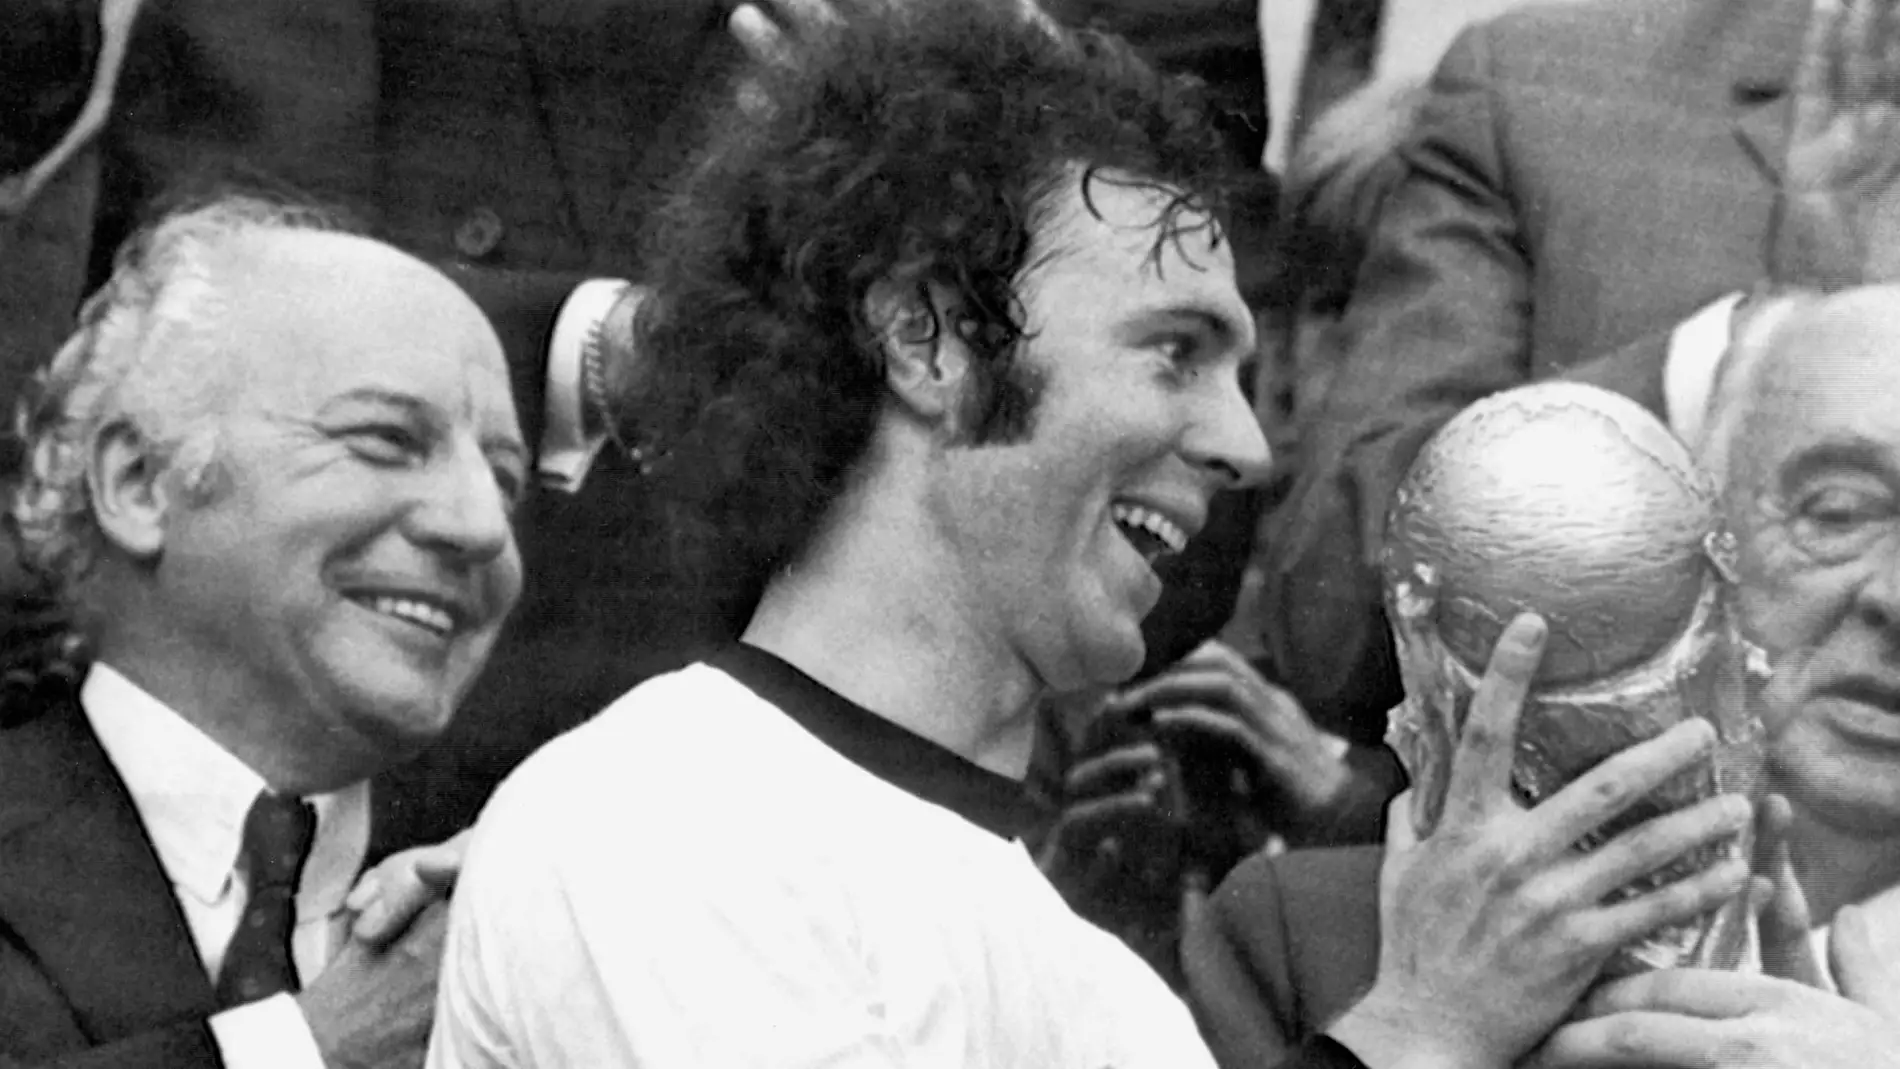  Franz Beckenbauer tras recibir el trofeo de la Copa del Mundo de 1974